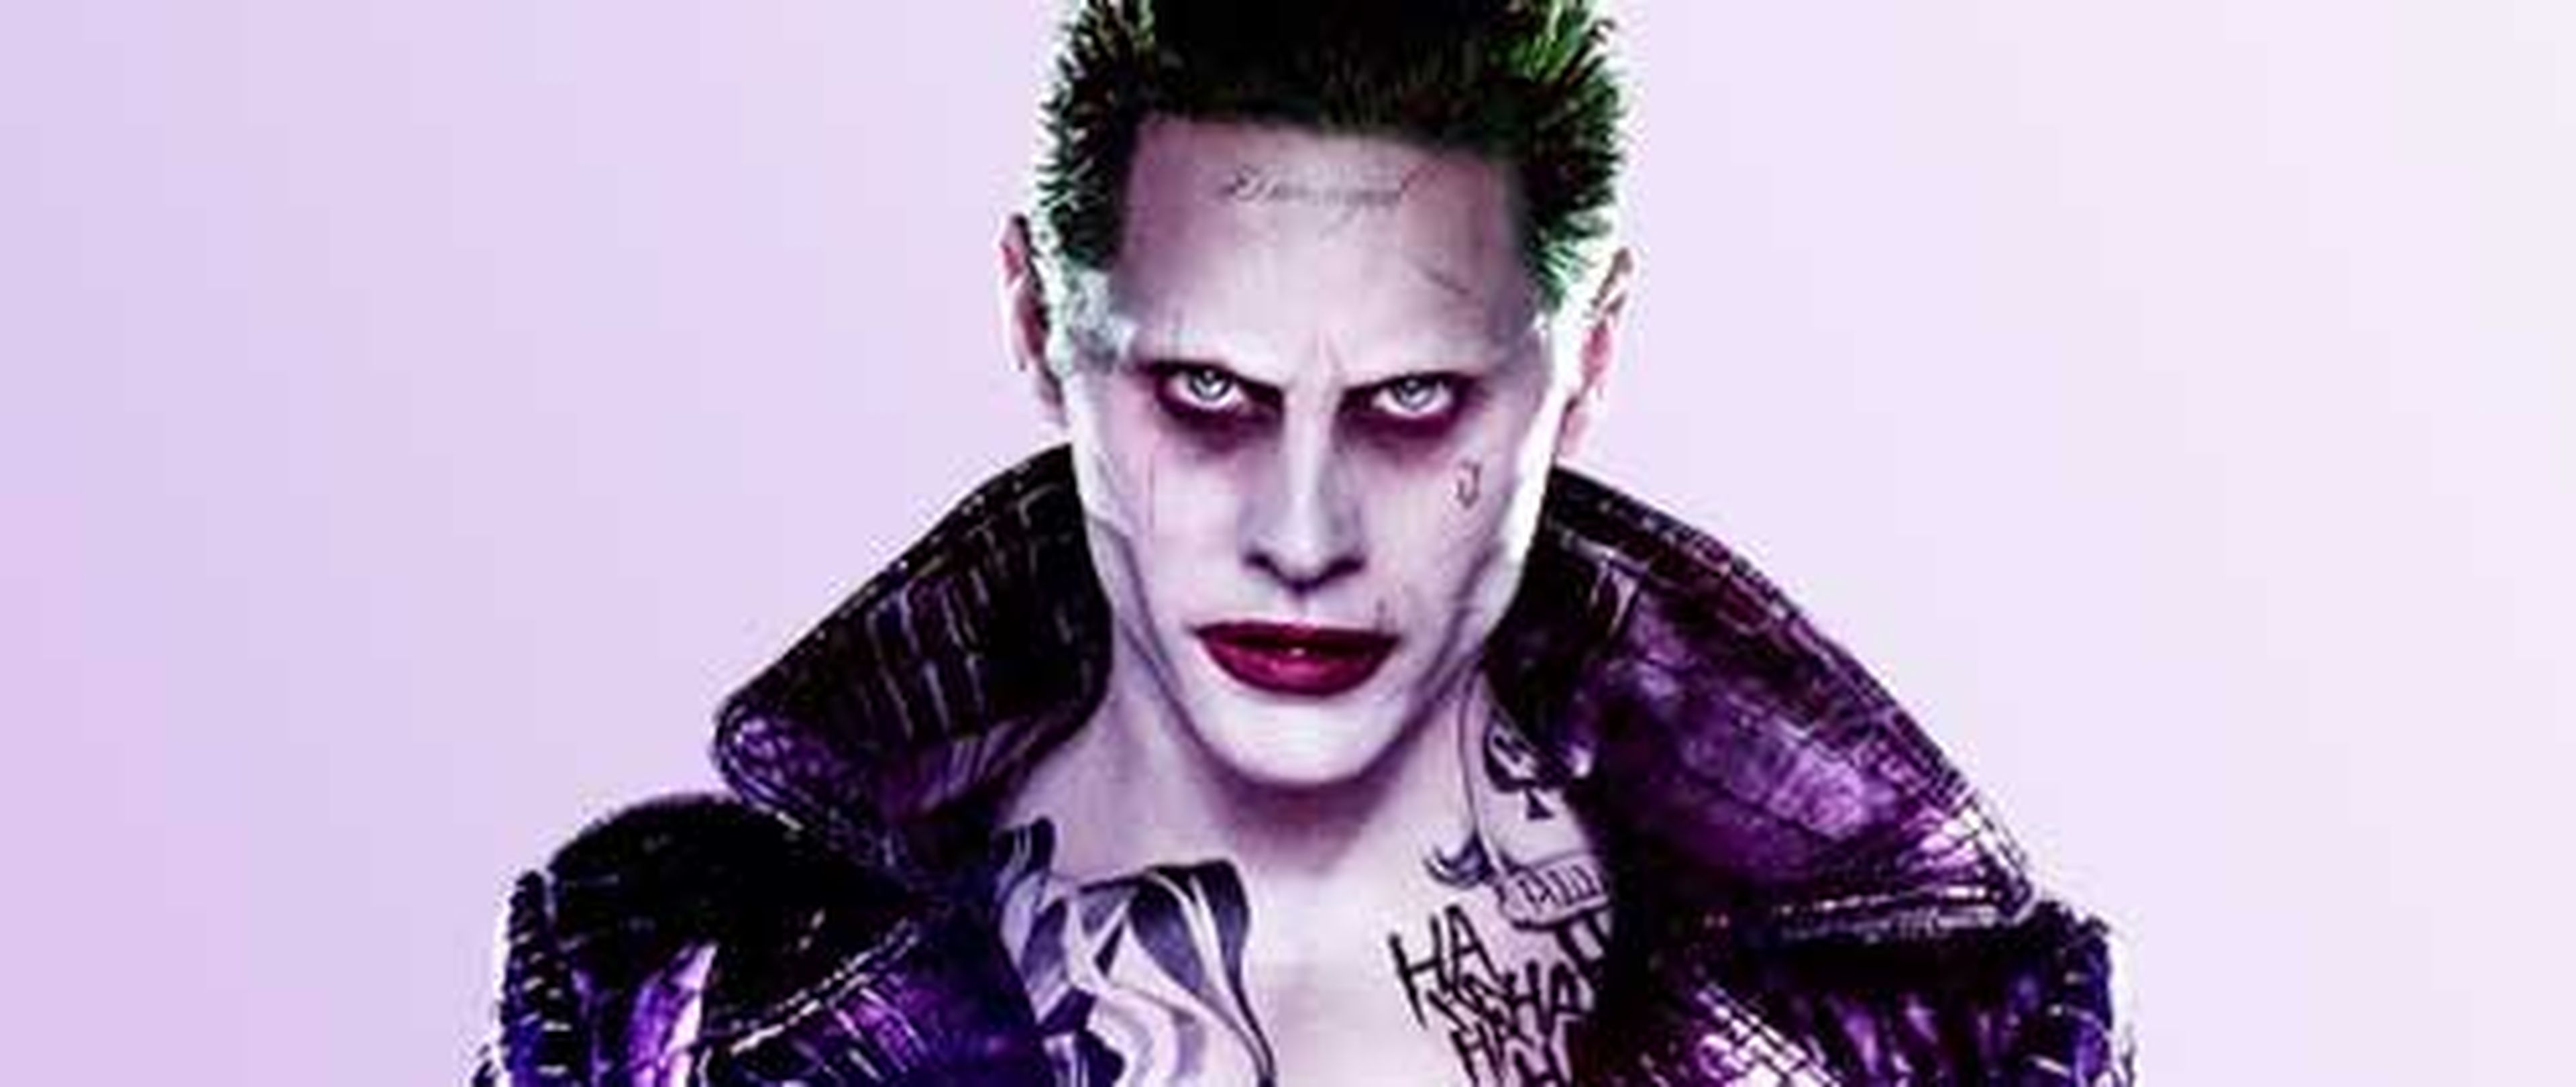 La película en solitario del Joker con Jared Leto se ha cancelado